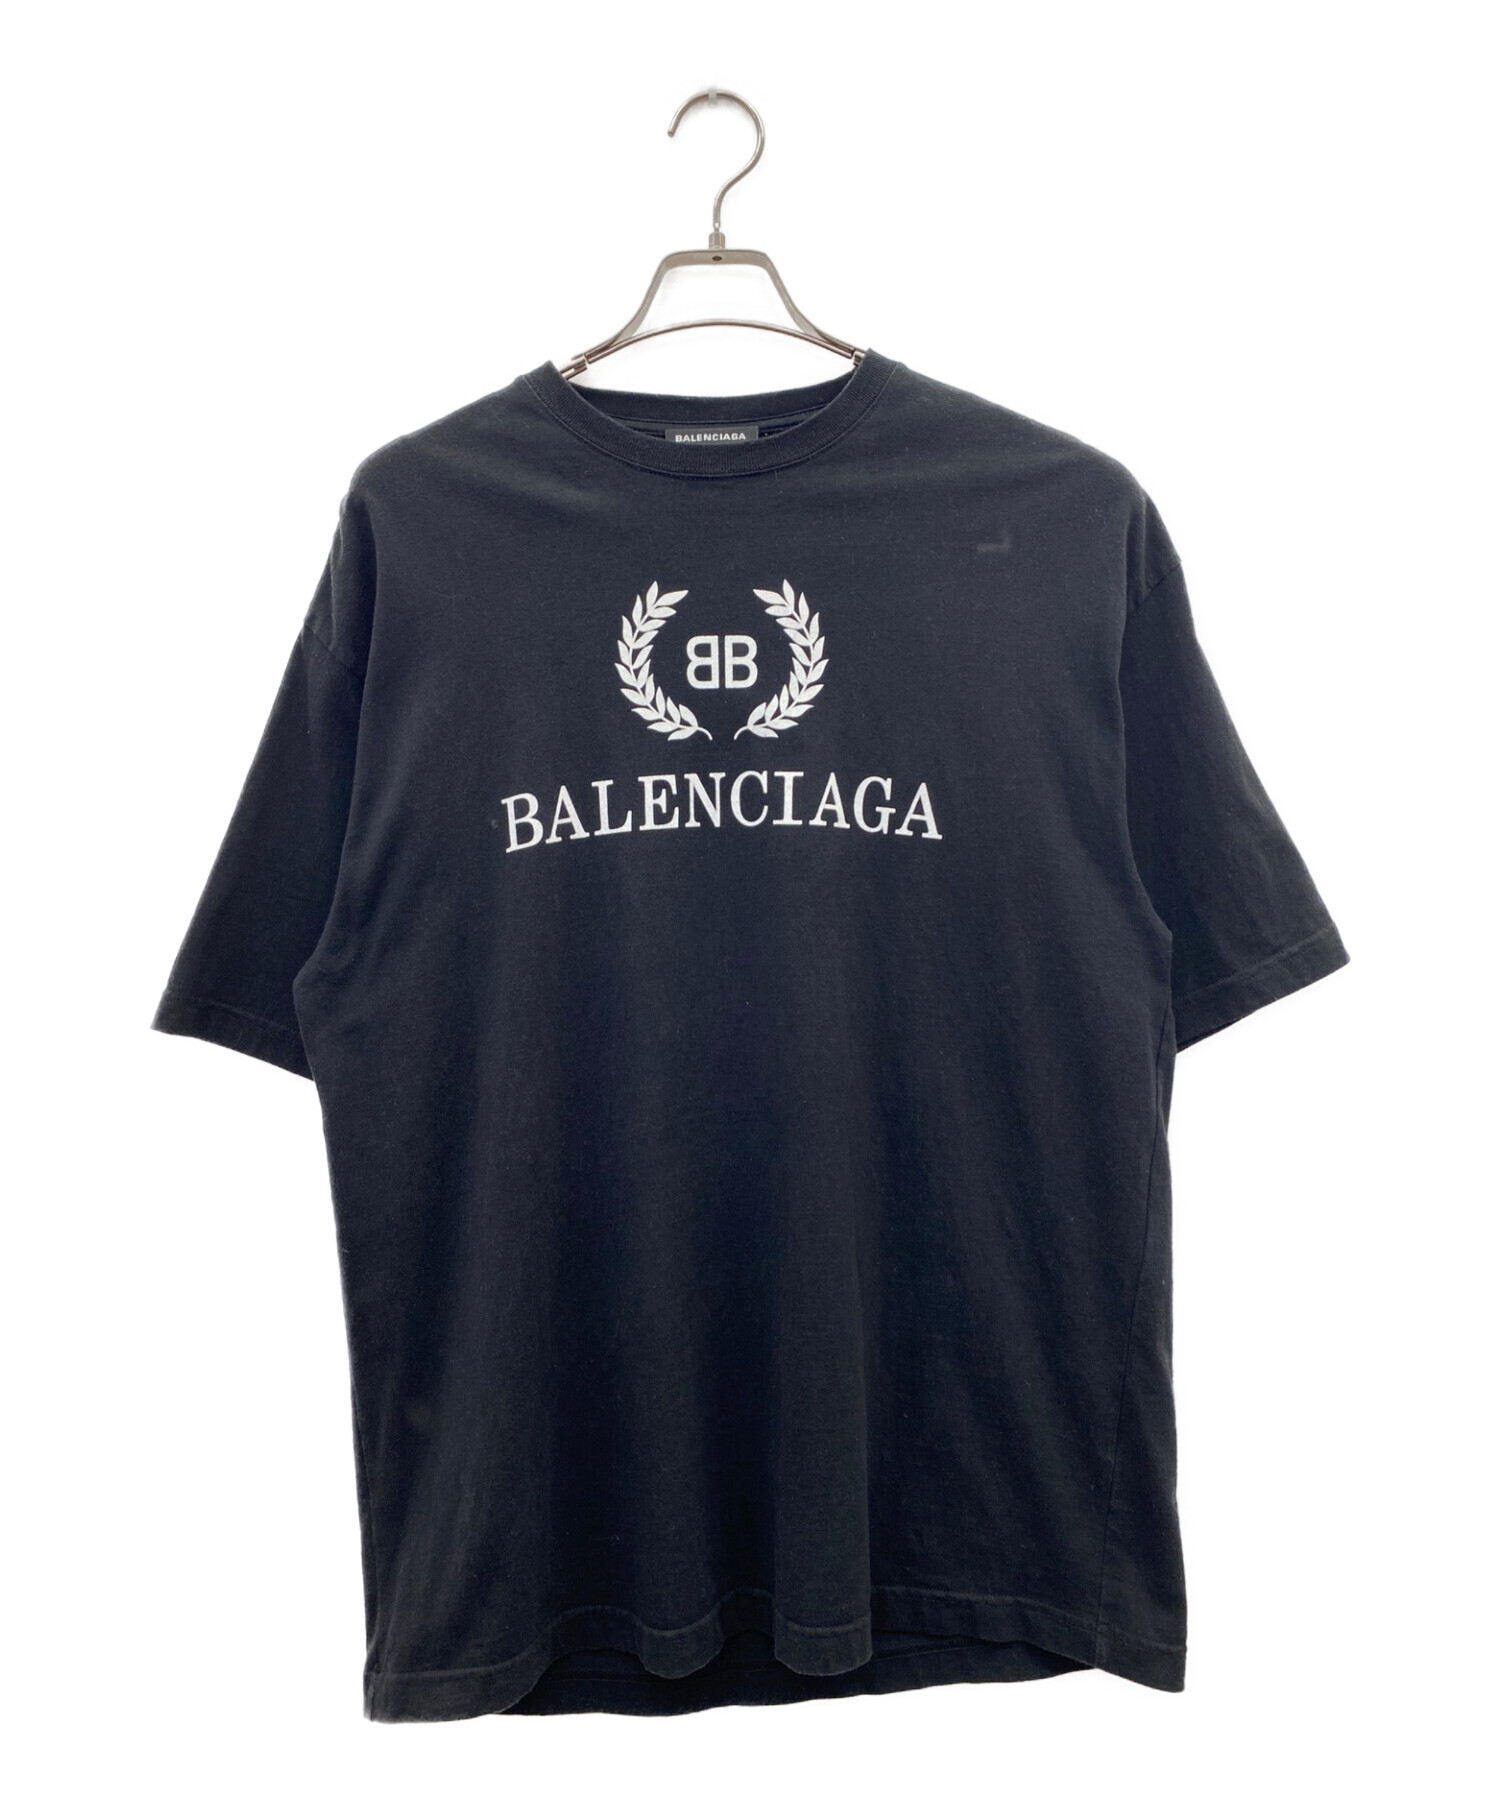 xs バレンシアガ ロゴ  半袖 Tシャツ 黒 ブラック balenciaga